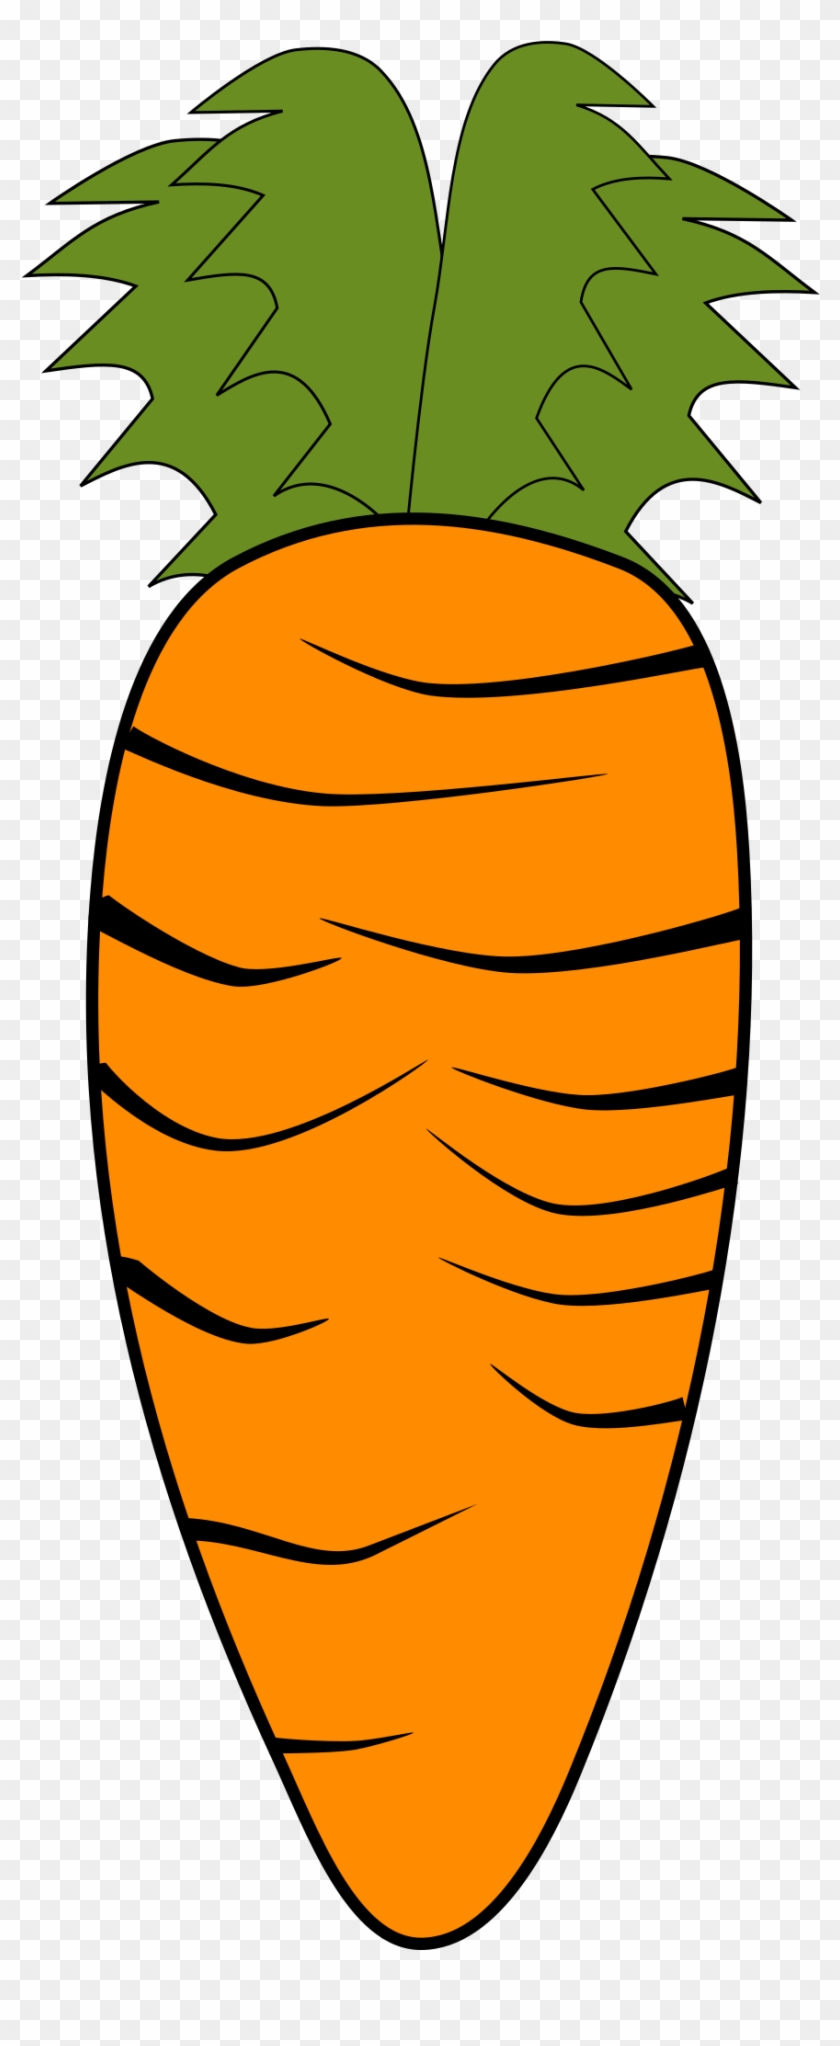 Big Image - Clip Art Of Carrots #253748